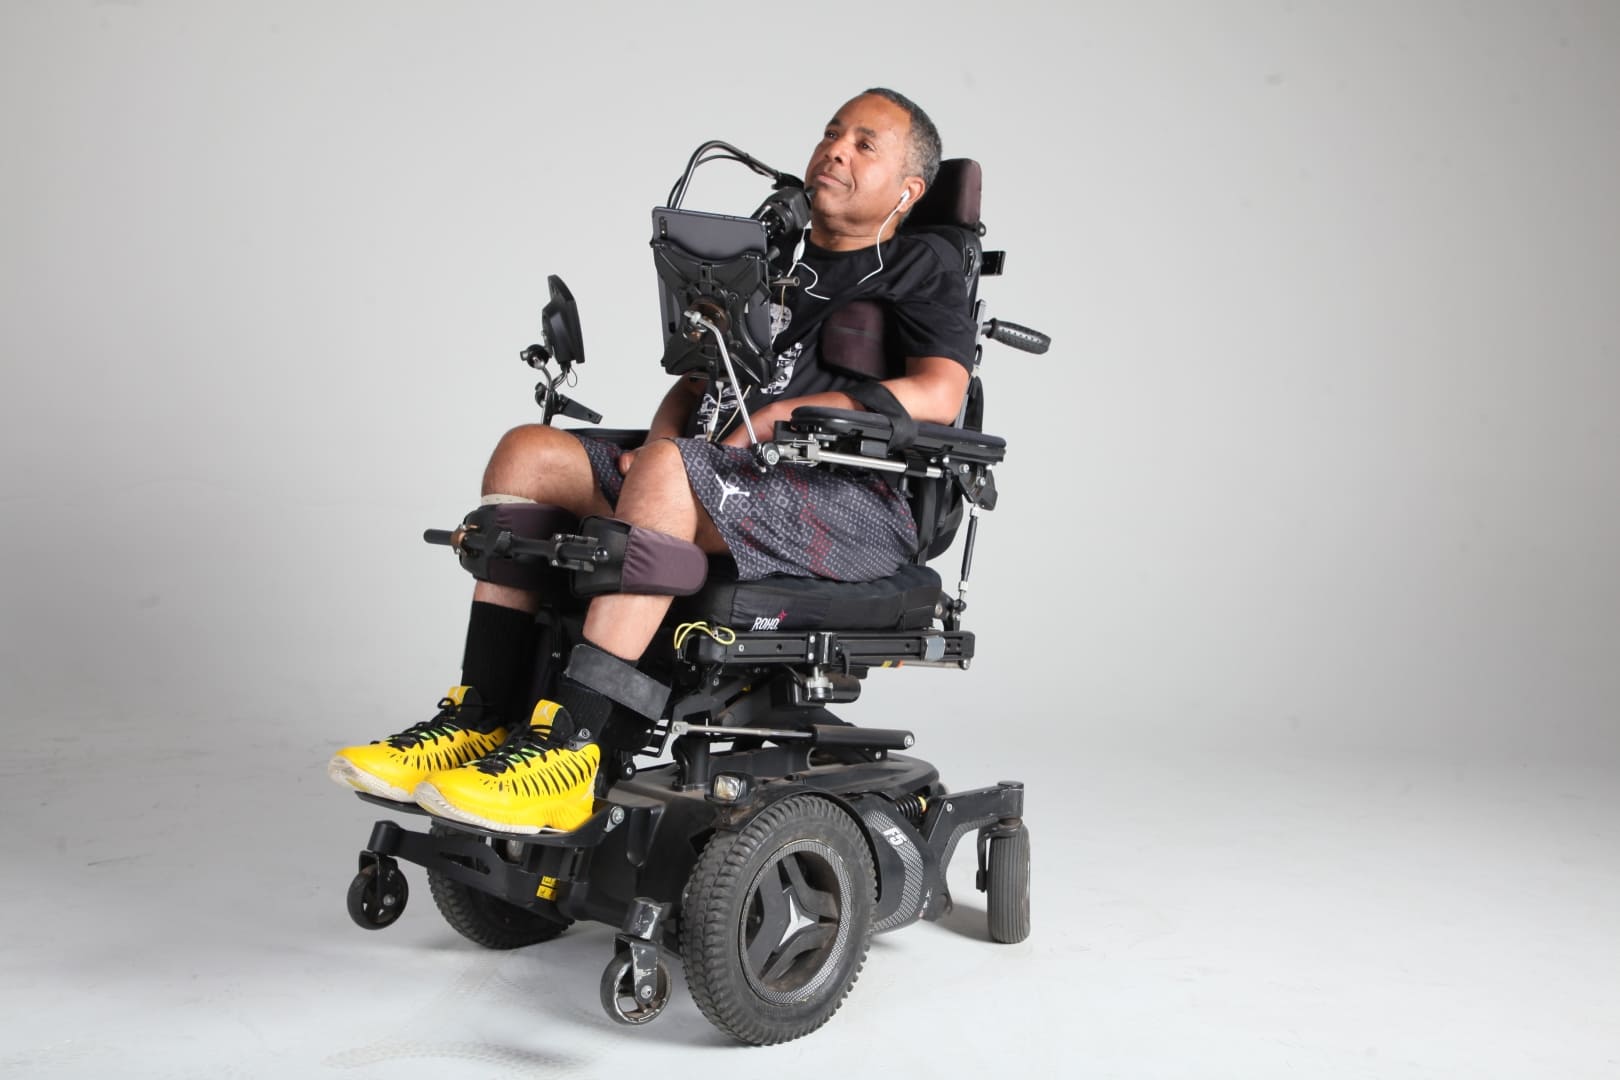 Homem tetraplégico coautor deste artigo "Abajur e elevadores", Marco Pellegrini, em cadeira de rodas motorizada com controles adaptados.